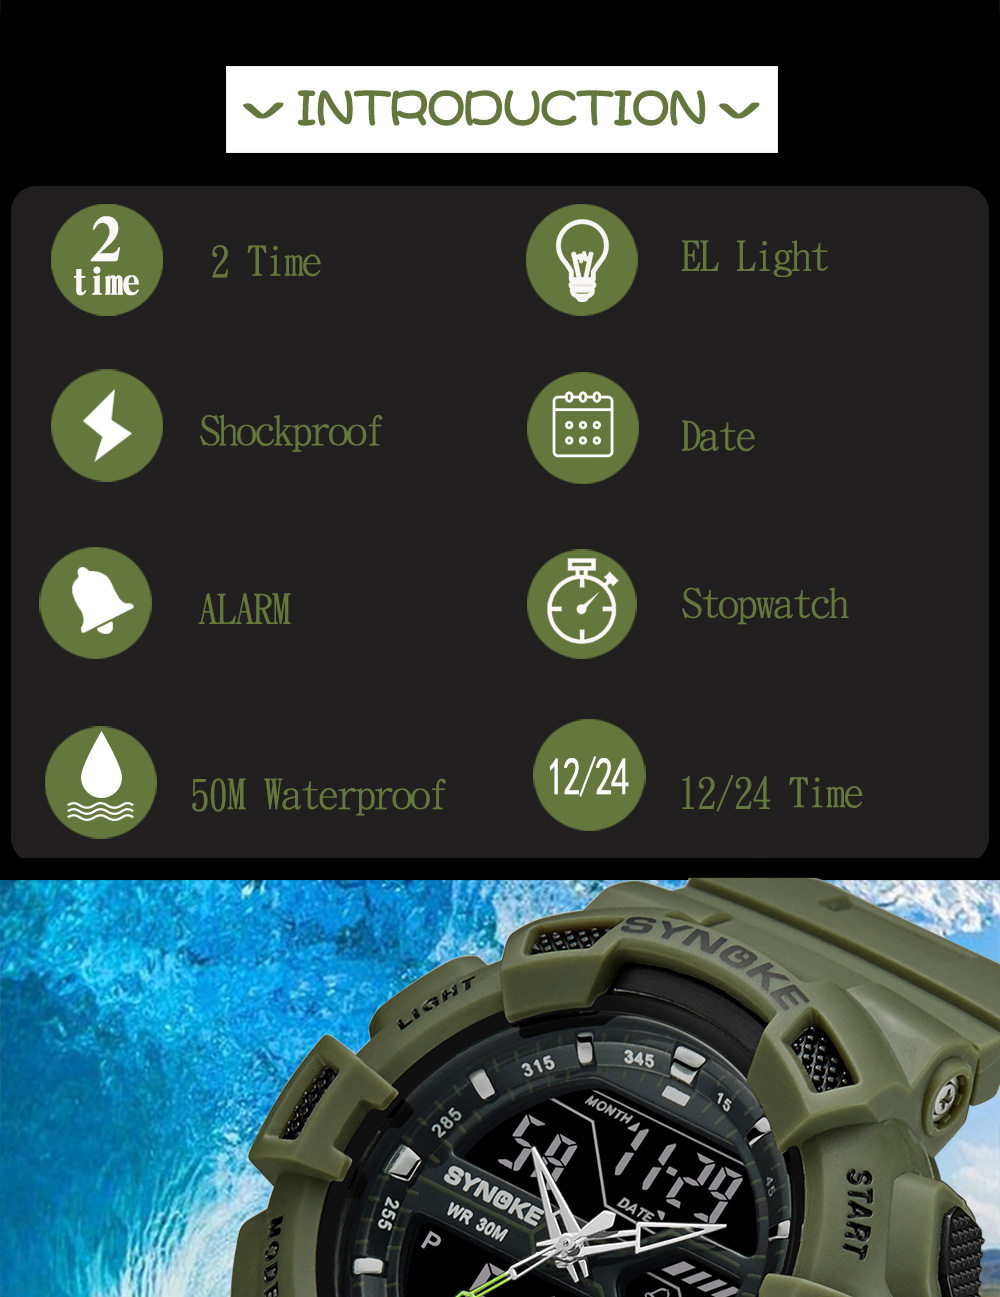 Synoke Outdoor Sports Multi-function Waterproof Watch Men Luminous Watch